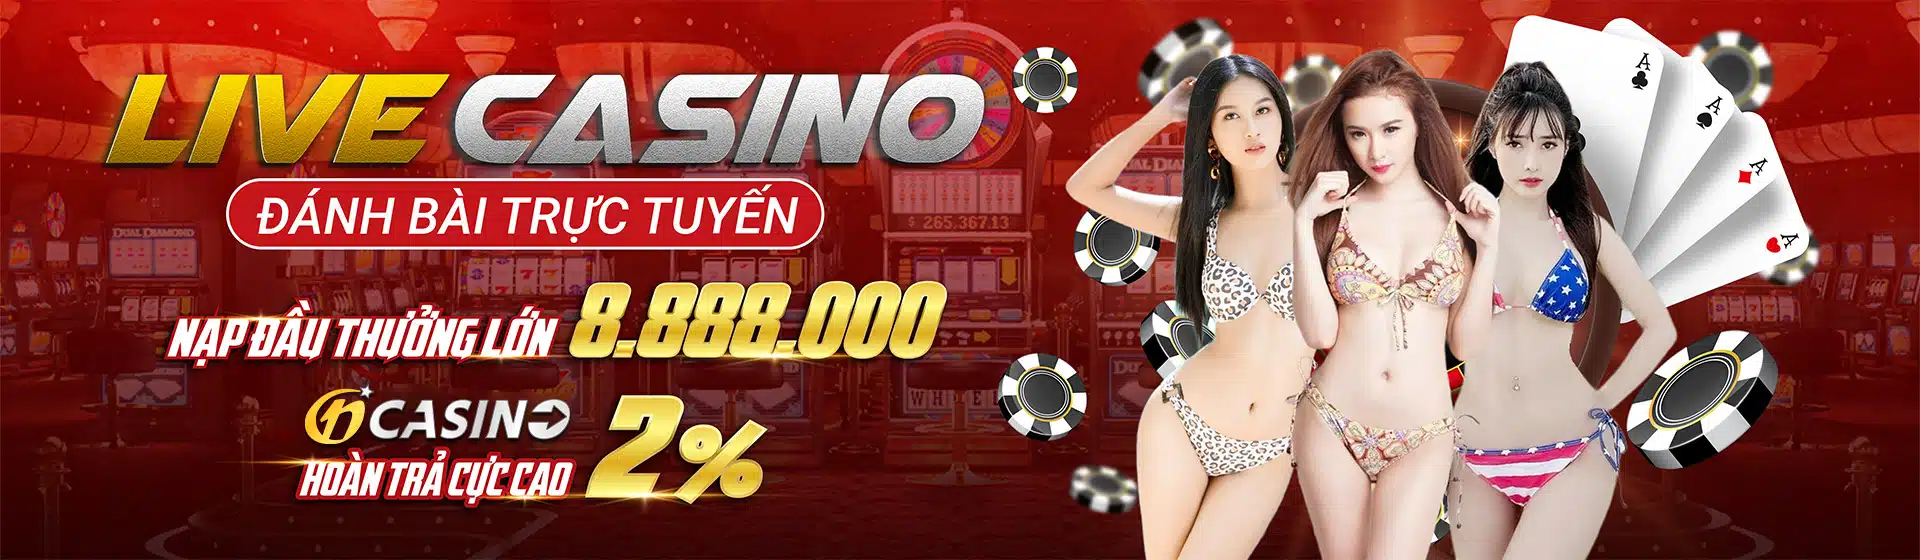 sm66 casino